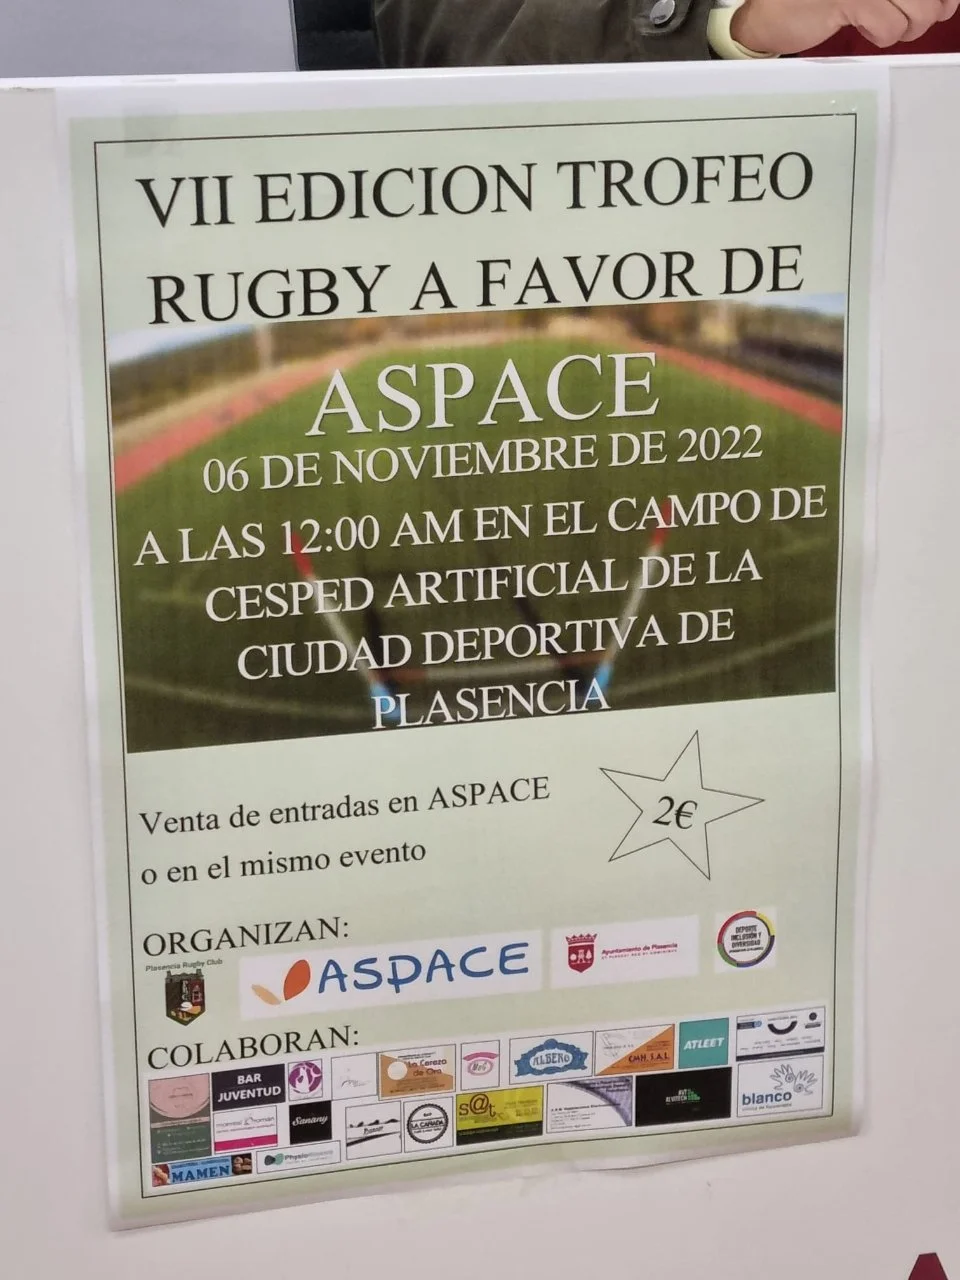 VII Trofeo de Rugby a favor de Aspace en Plasencia